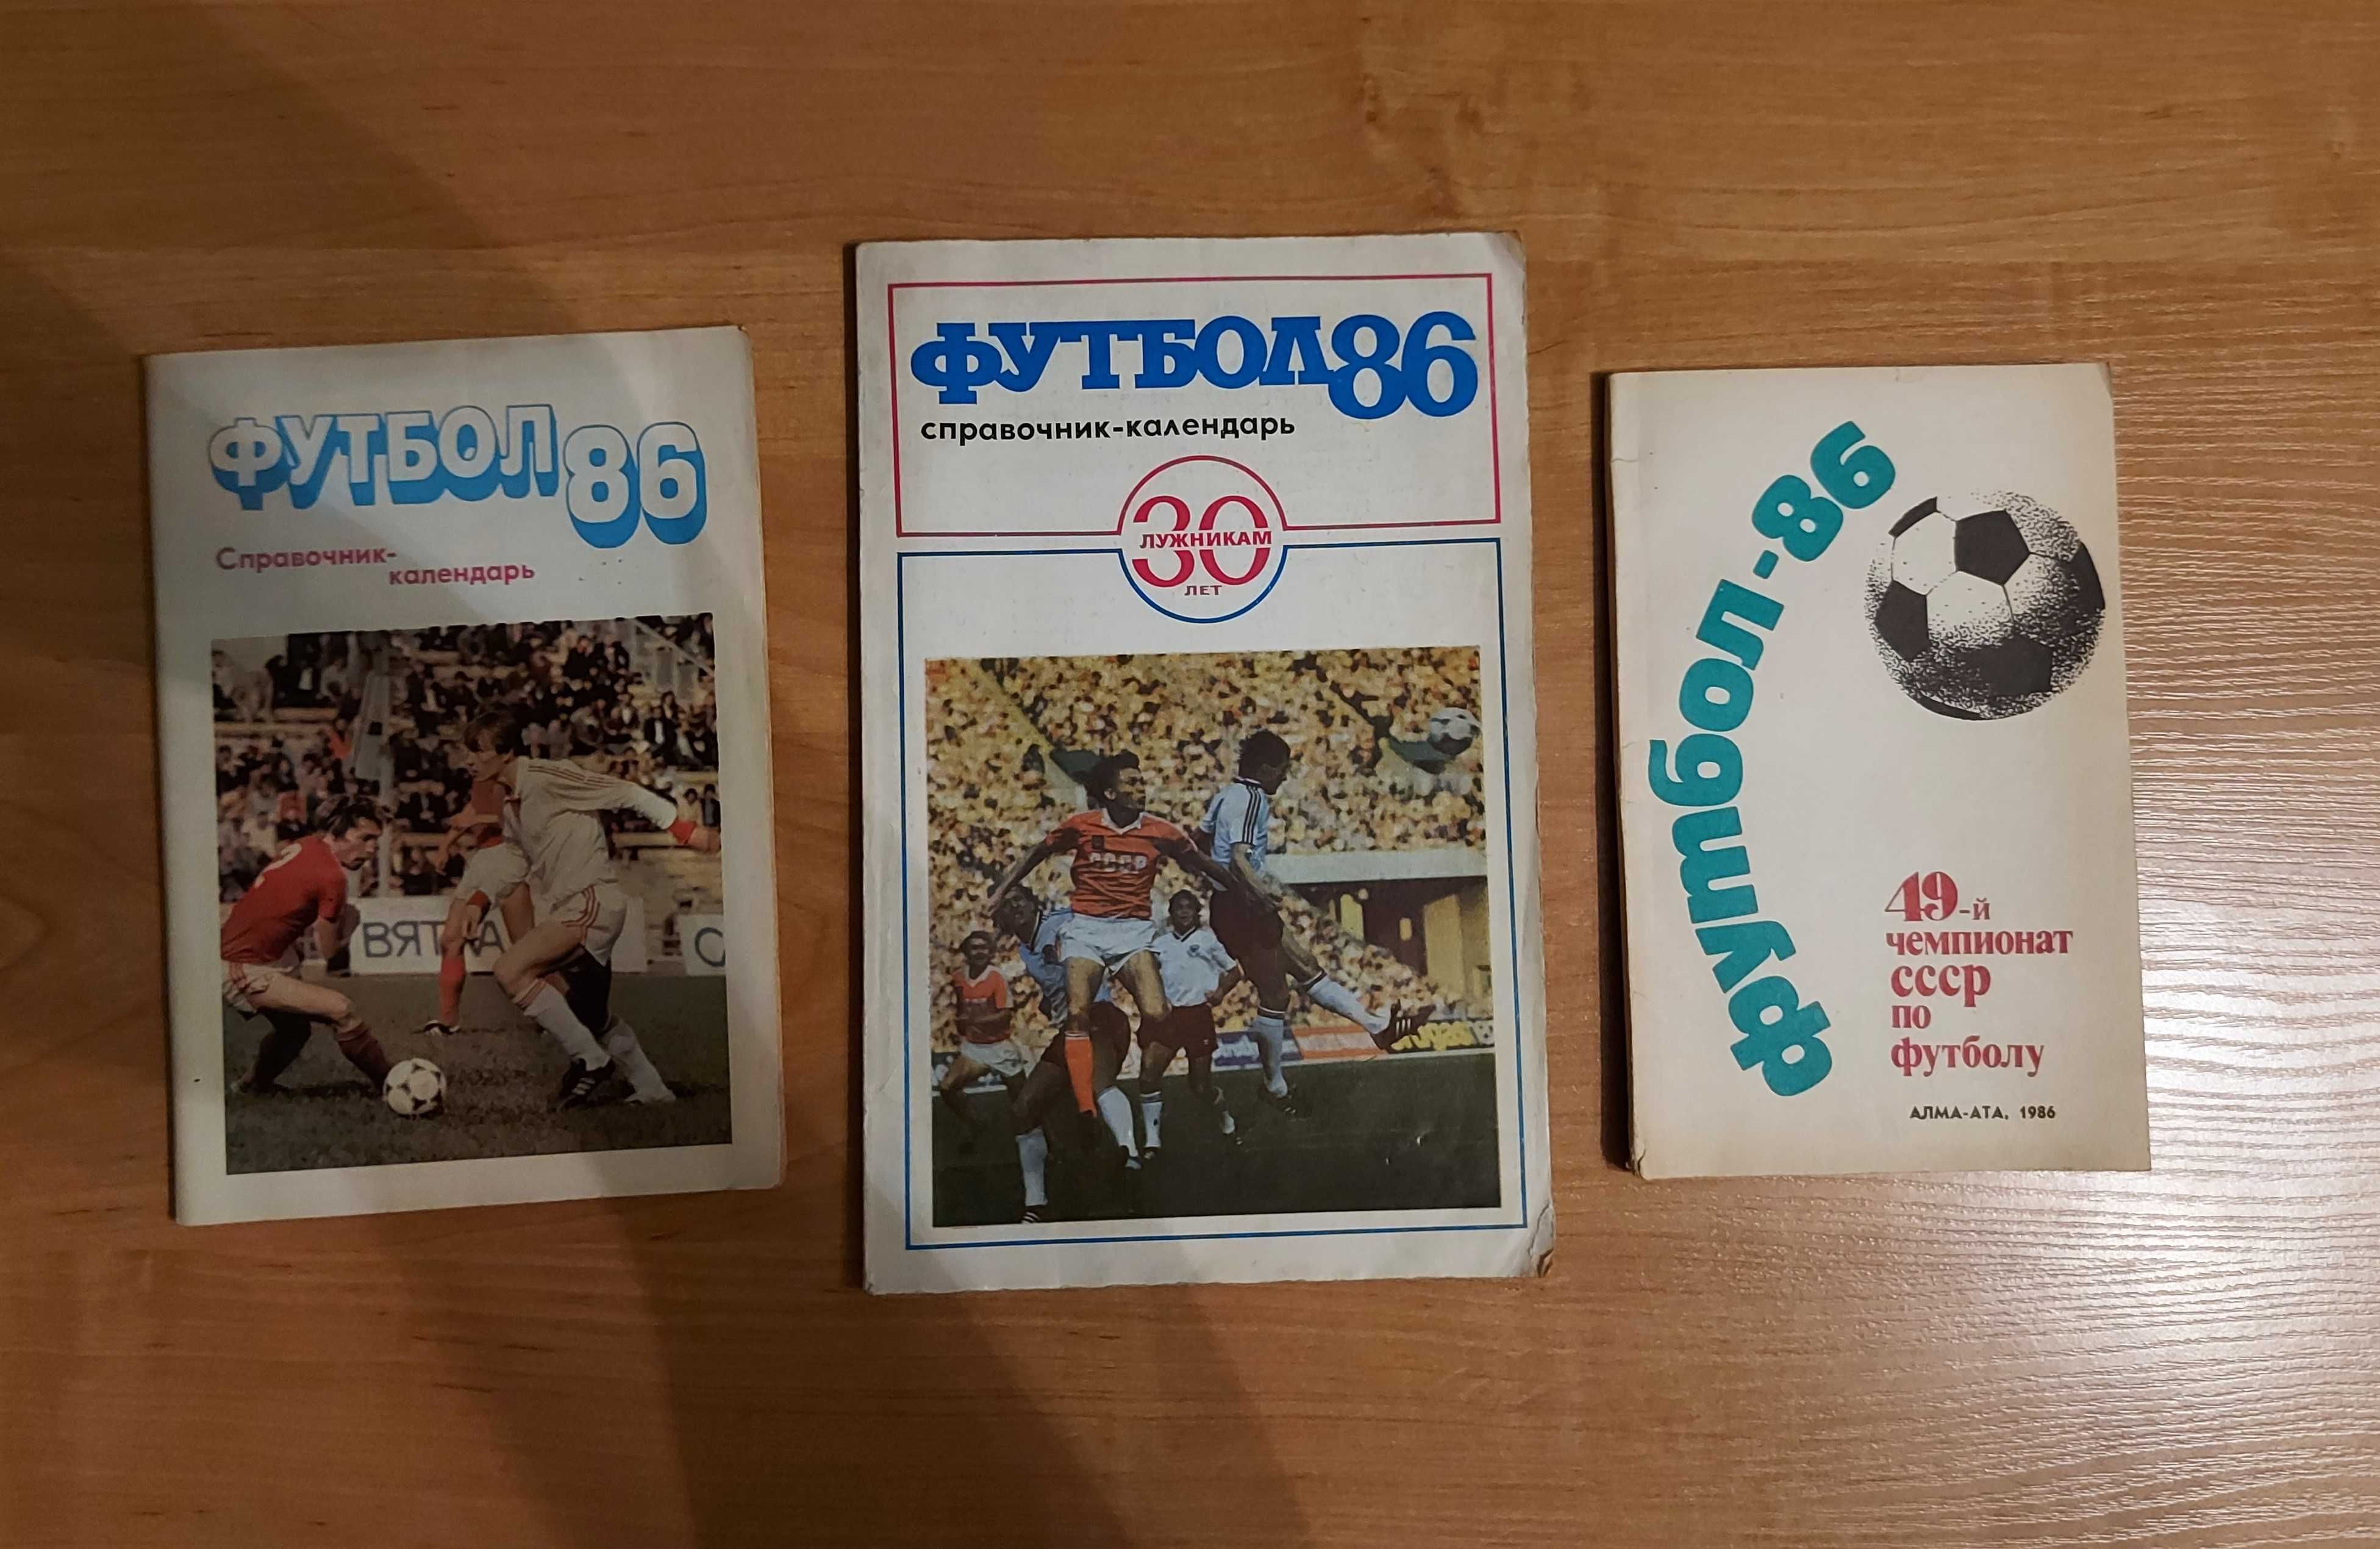 Три советских футбольных справочника-календаря 1986 года